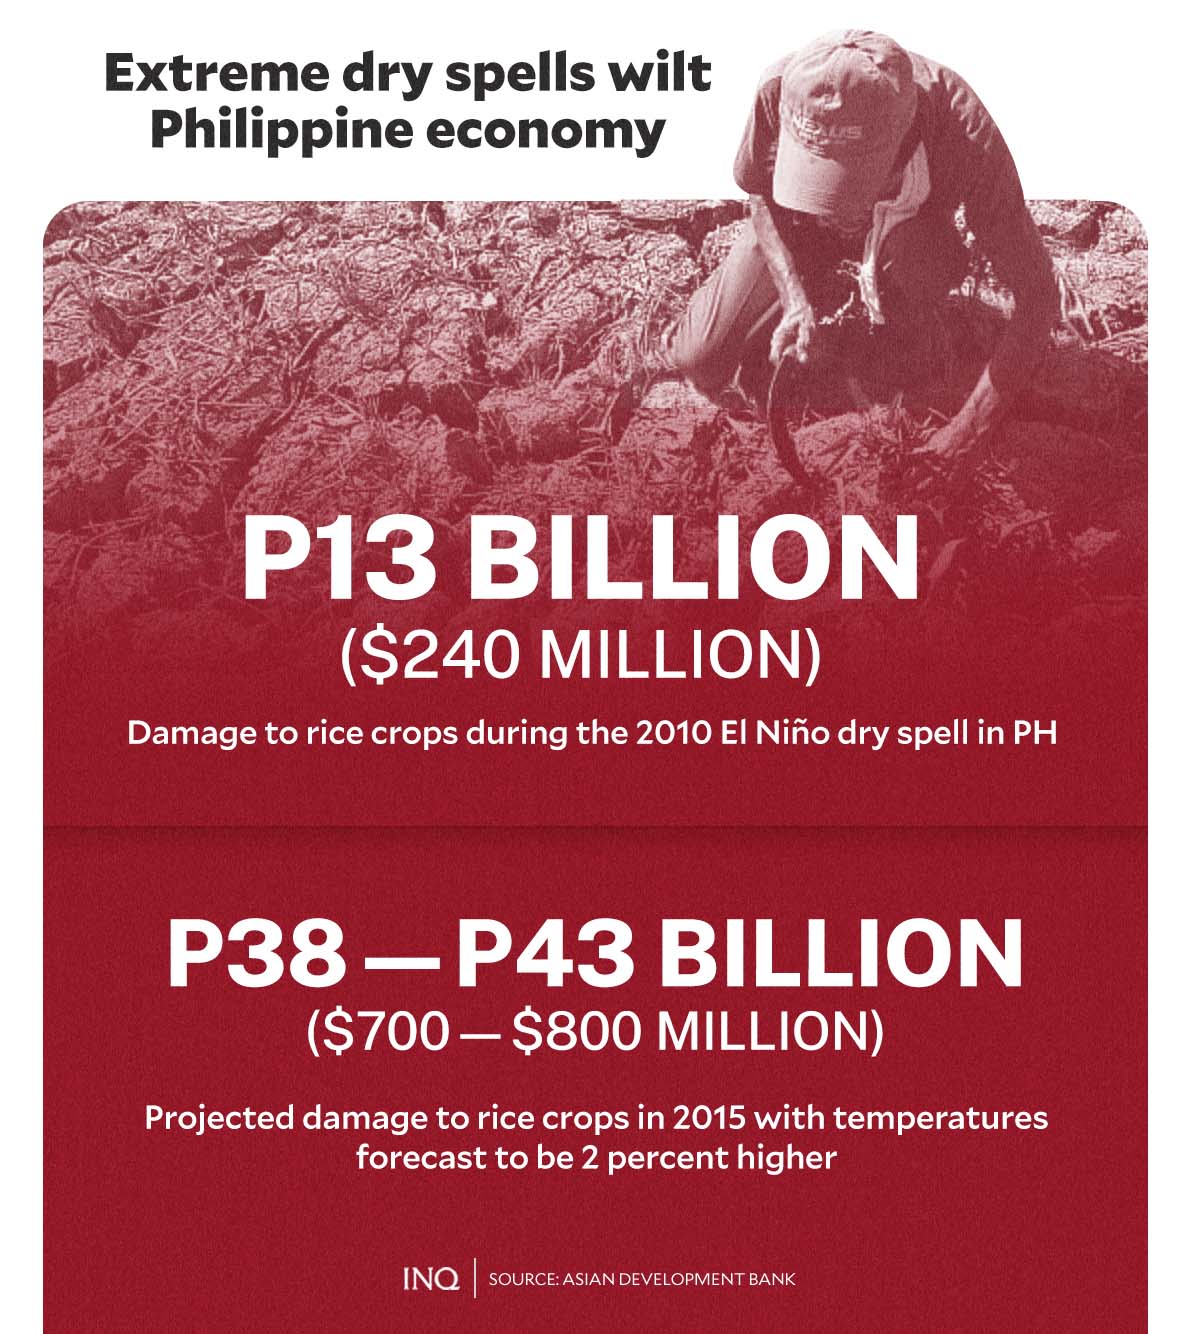 extreme dry spells wilt Philippine economy